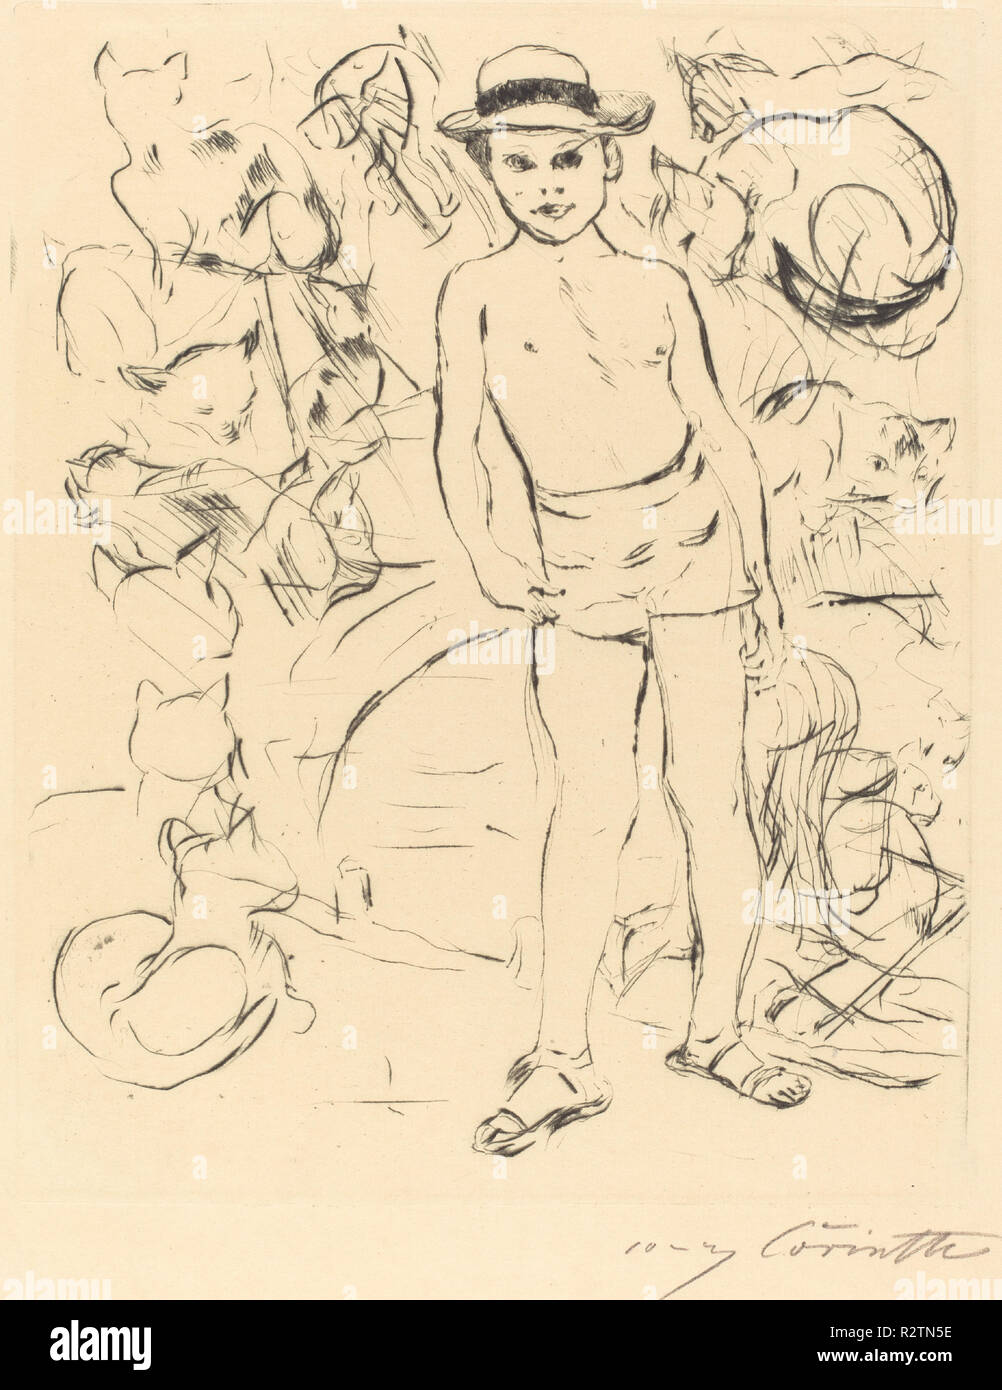 Man Bathing-Trunks et chapeau de paille (Knabe mit und Strohhut Badehose). En date du : 1915. Dimensions : 24,5 x 19,8 plaque : cm (9 5/8 x 7 13/16 in.) total : 33,1 x 24,4 cm (13 1/16 x 9 5/8 in.). Médium : pointe sèche en noir sur papier vergé. Musée : National Gallery of Art, Washington DC. Auteur : Lovis Corinth. Banque D'Images